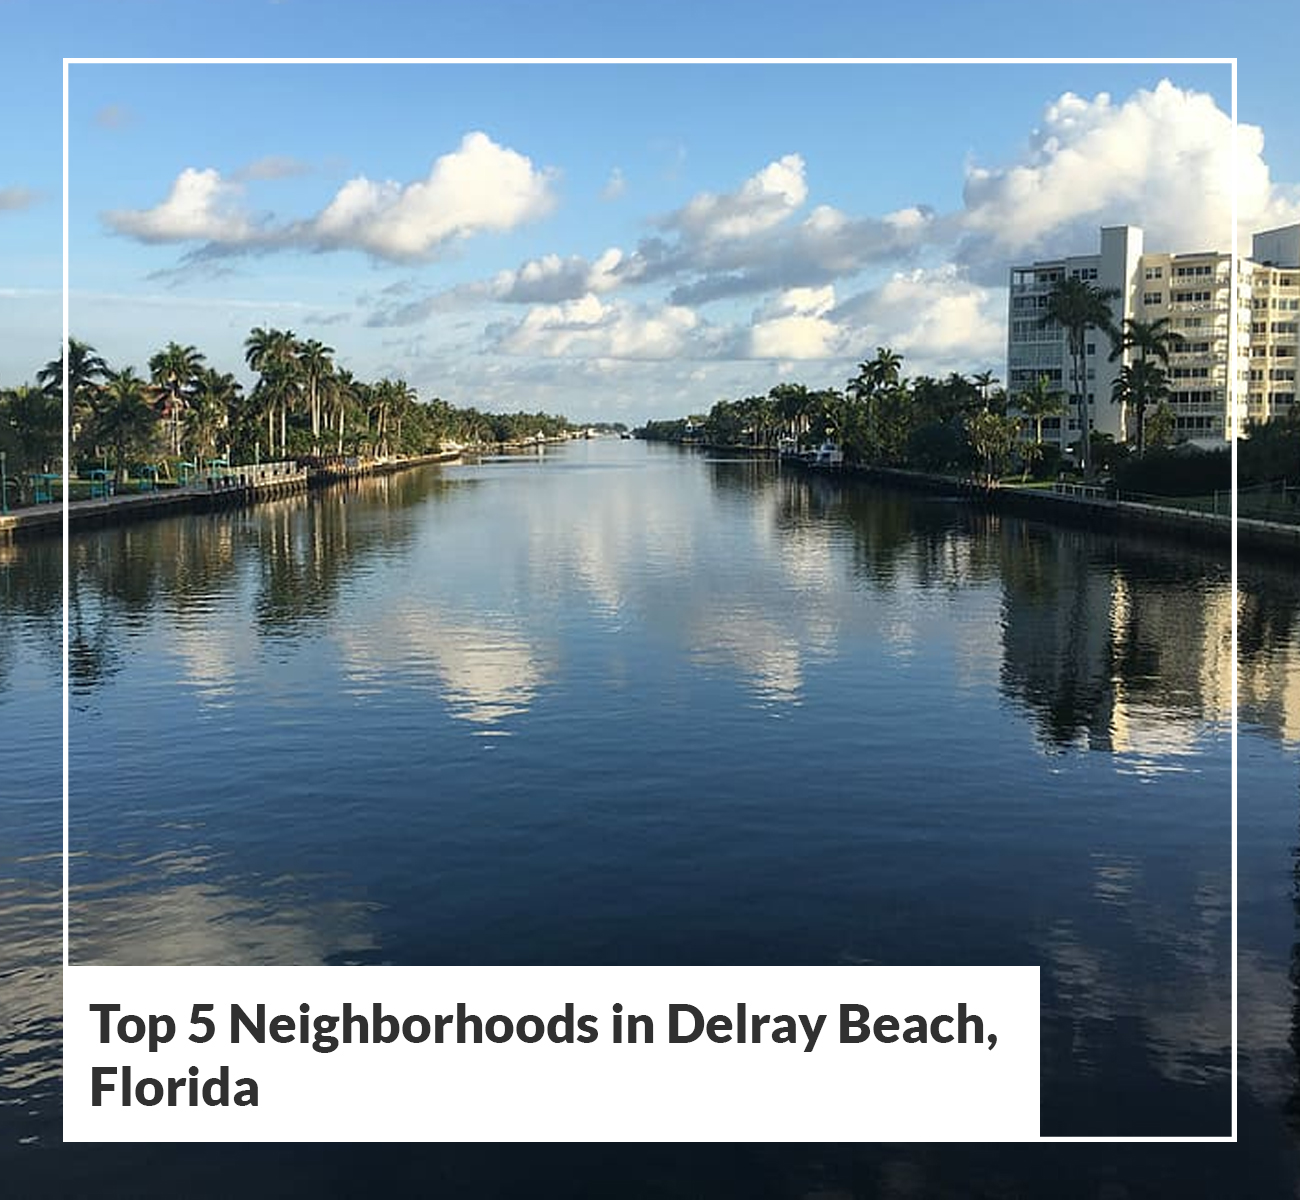 Top 5 Neighborhoods in Delray Beach, Florida